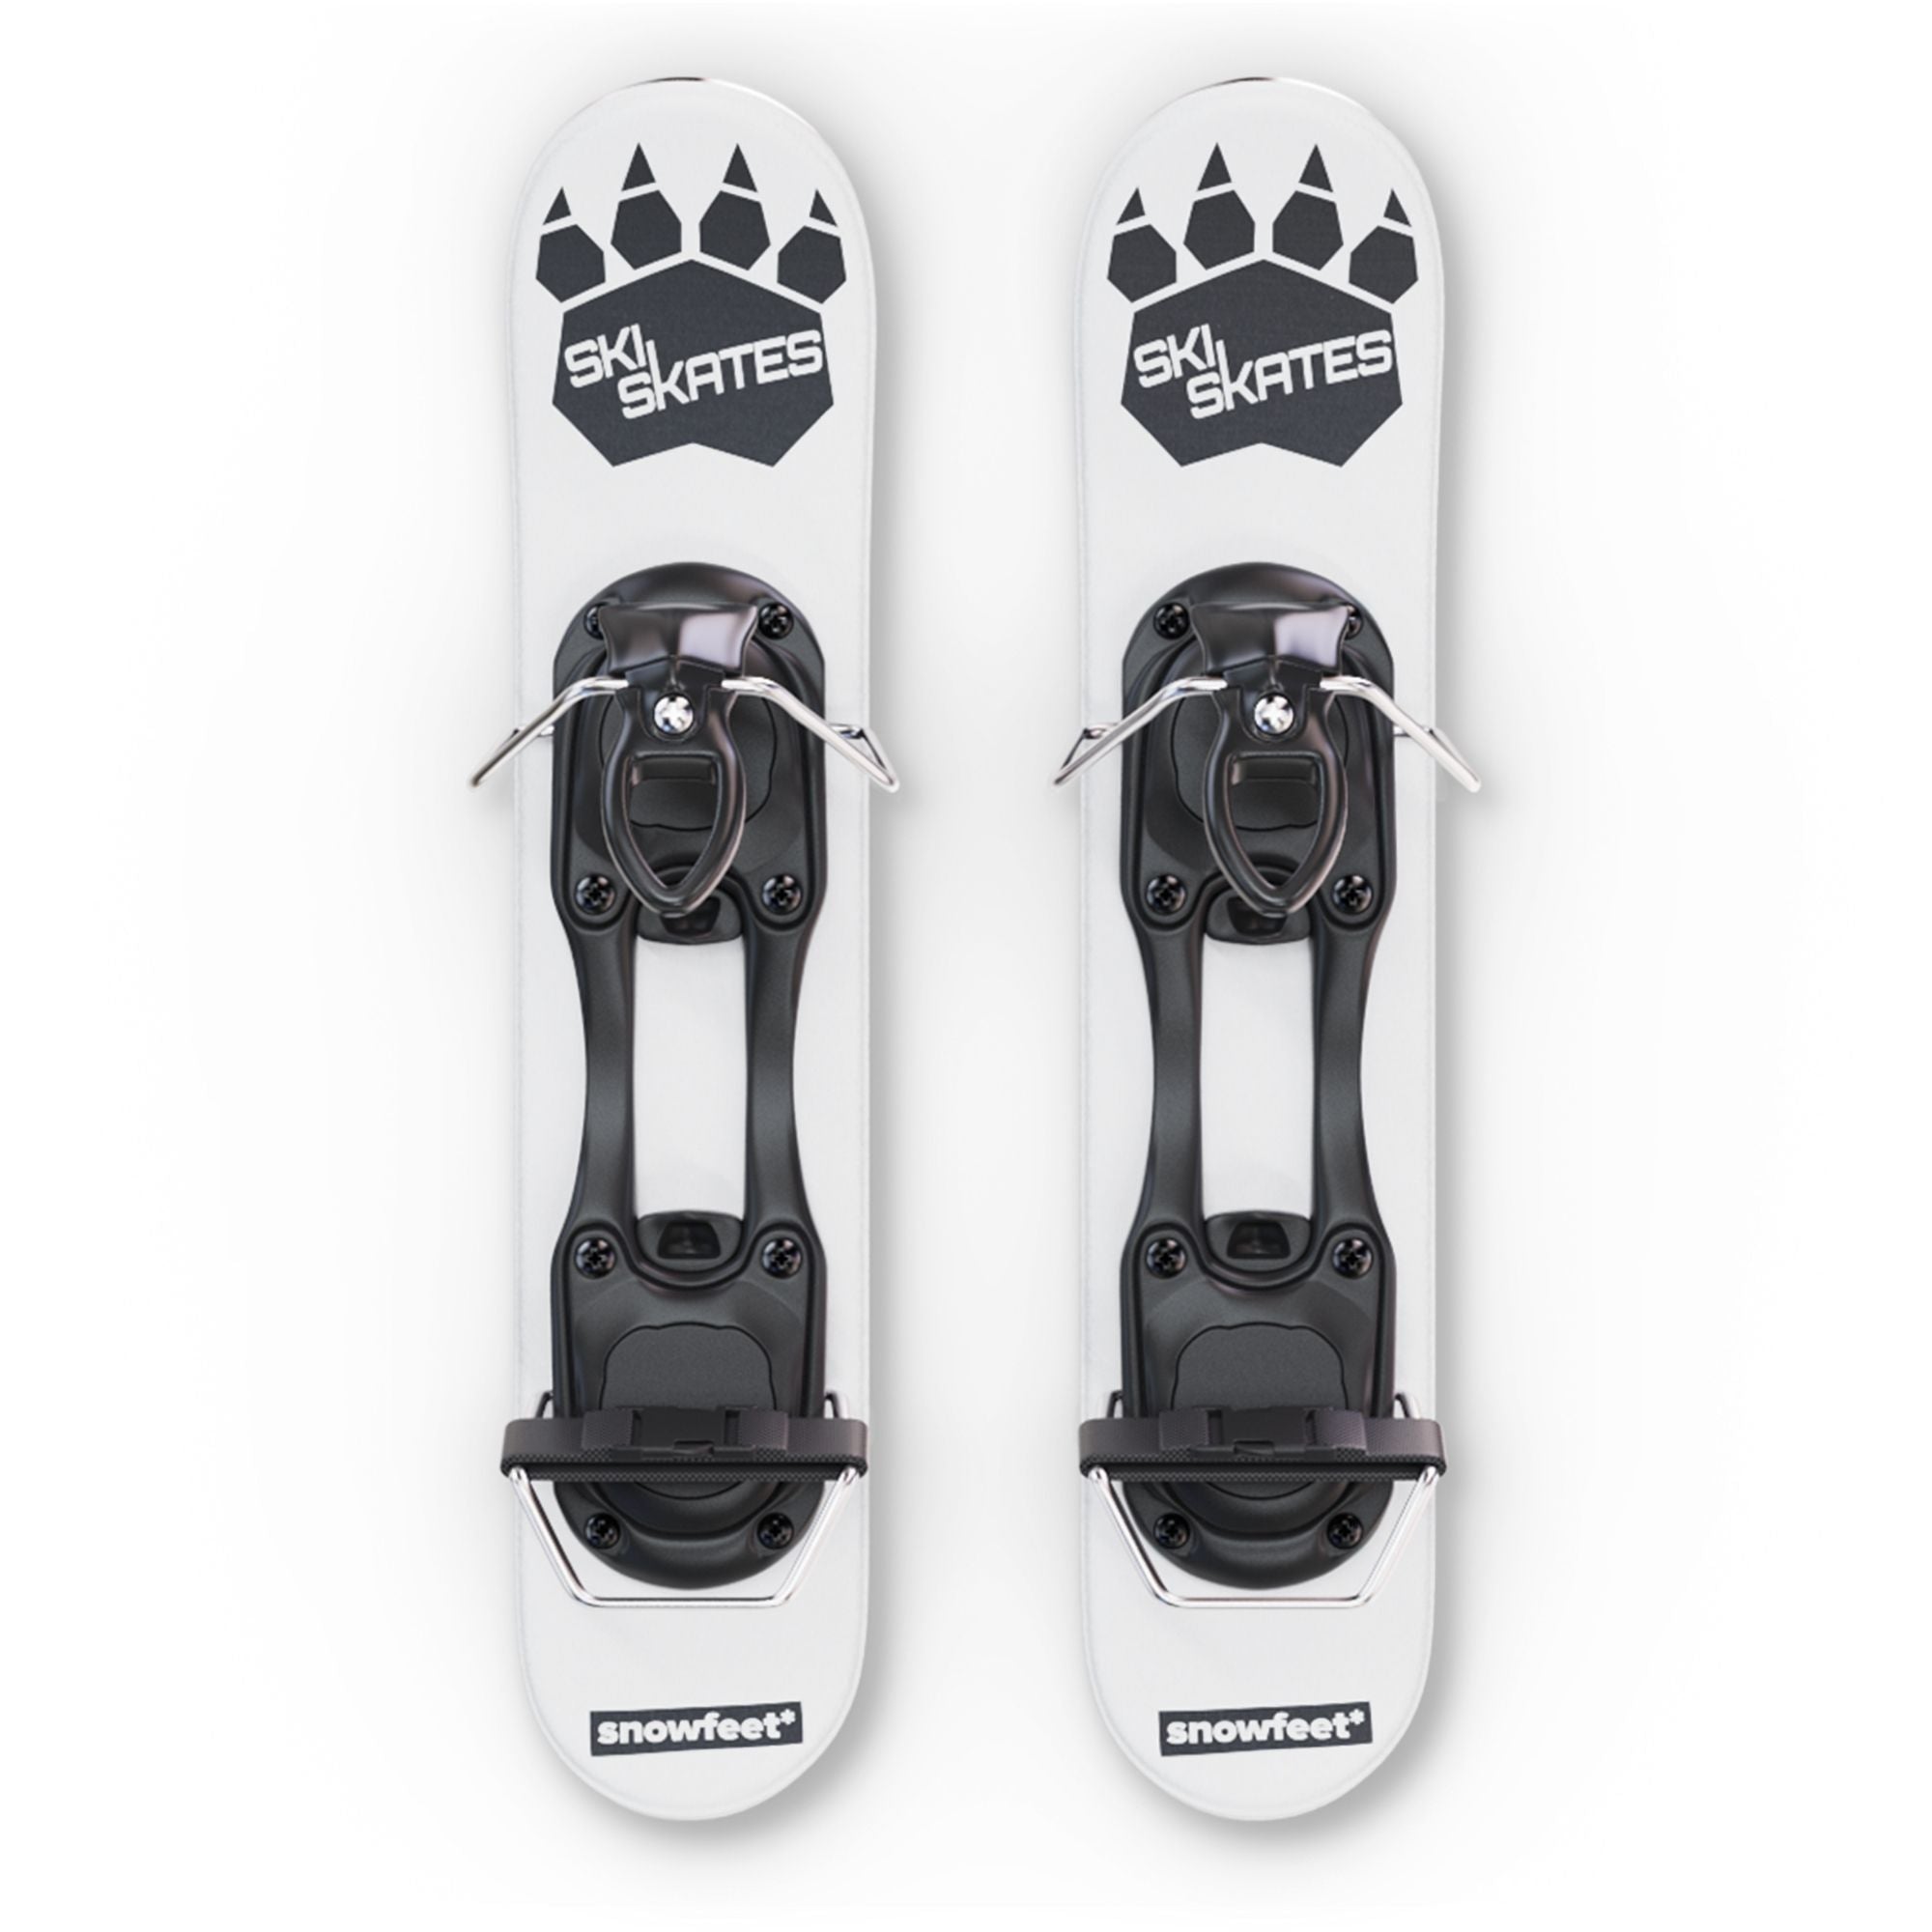 skiskates mini ski skates for snow snowskates short skis ski skates snowfeet miniski shortski skating ski for ski boots and for snowboard boots 